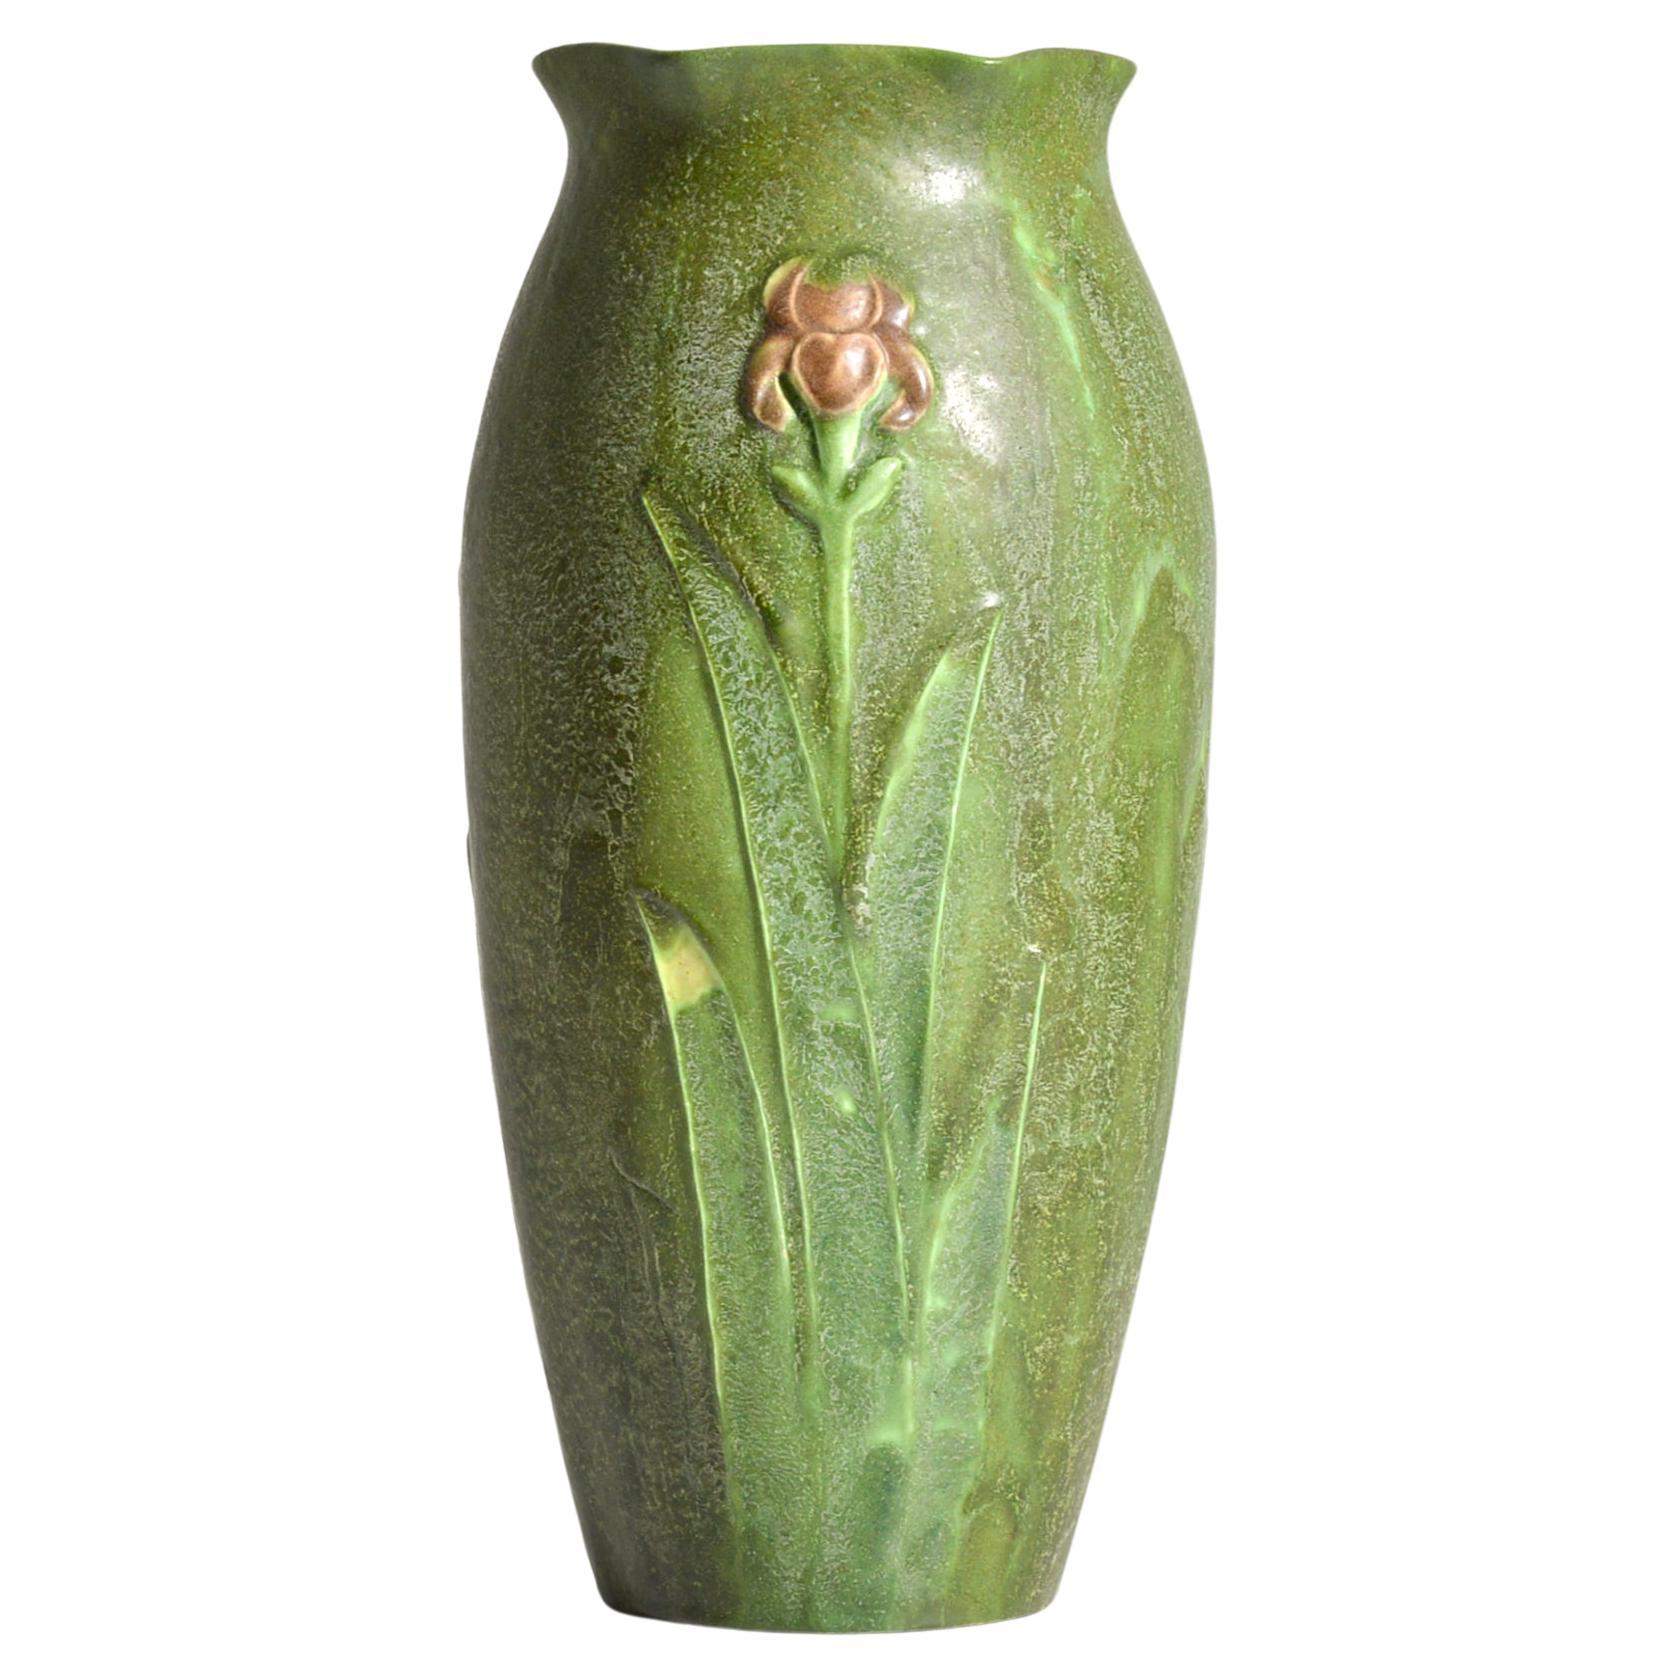 Seltene mehrfarbige Vase, George P. Kendrick für Grueby, George P. Kendrick